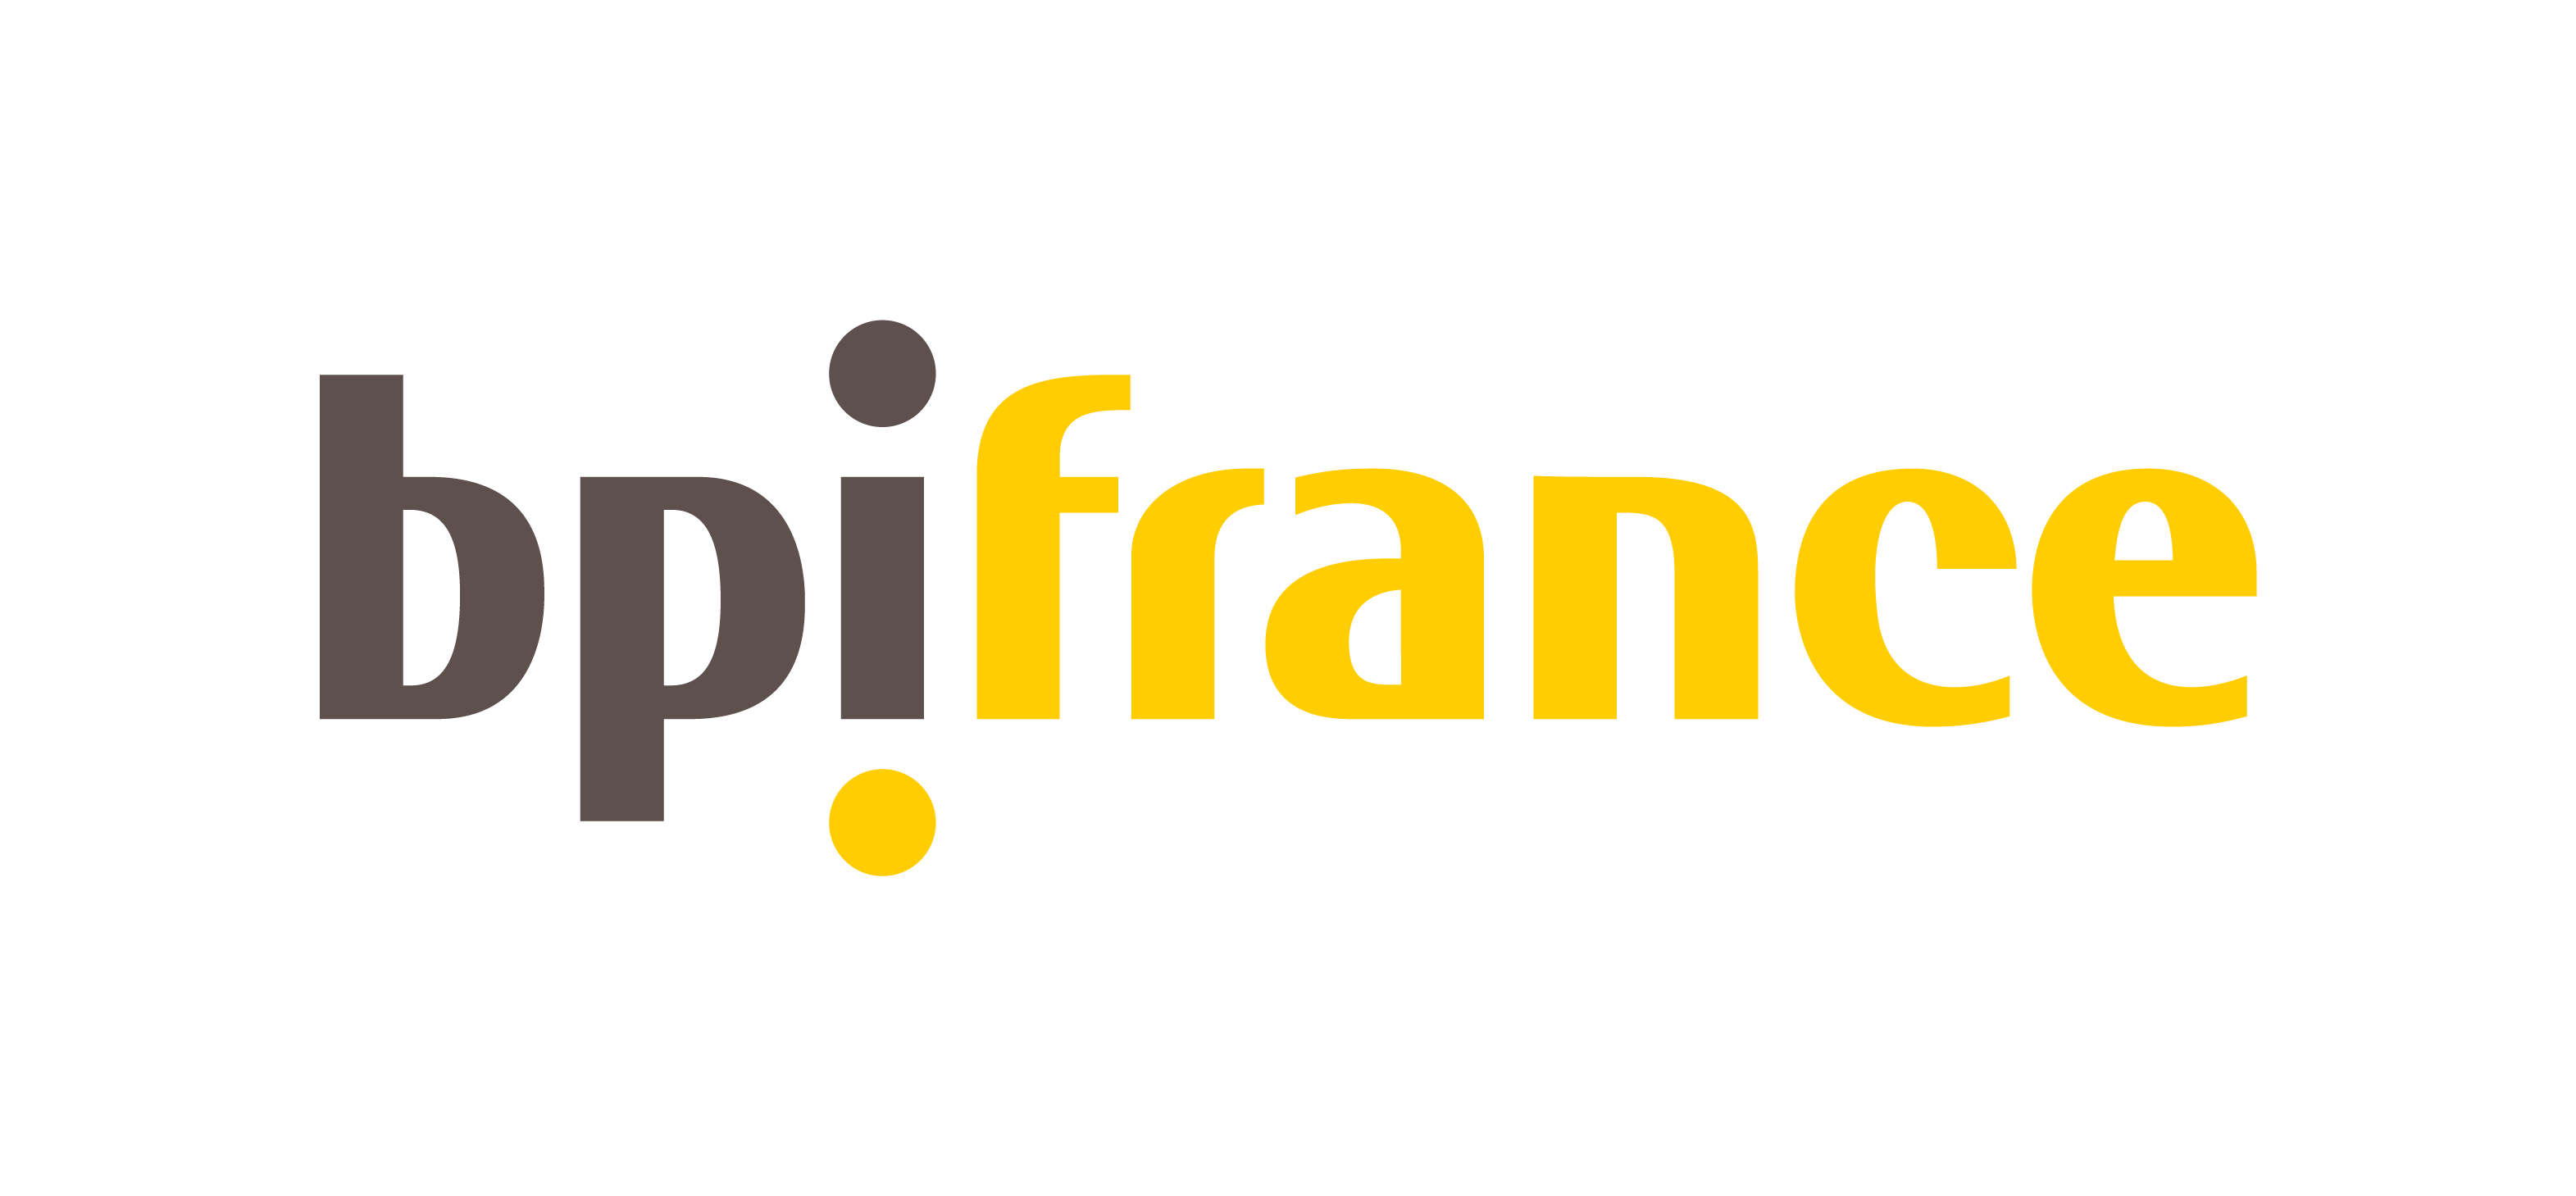 BPI France logo